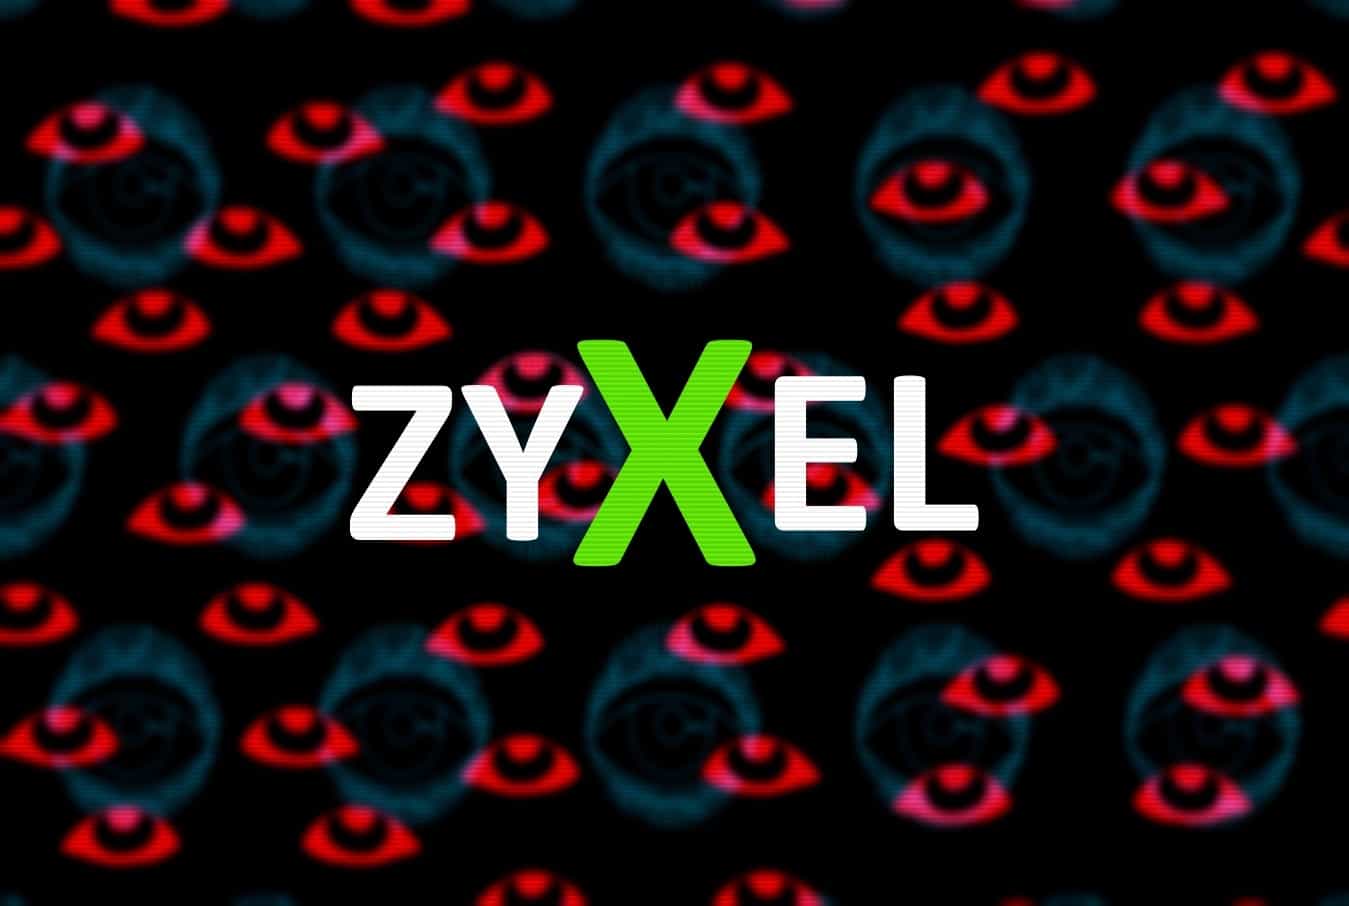 Over 100,000 Zyxel Firewalls, VPN Gateways Contain Backdoor Account